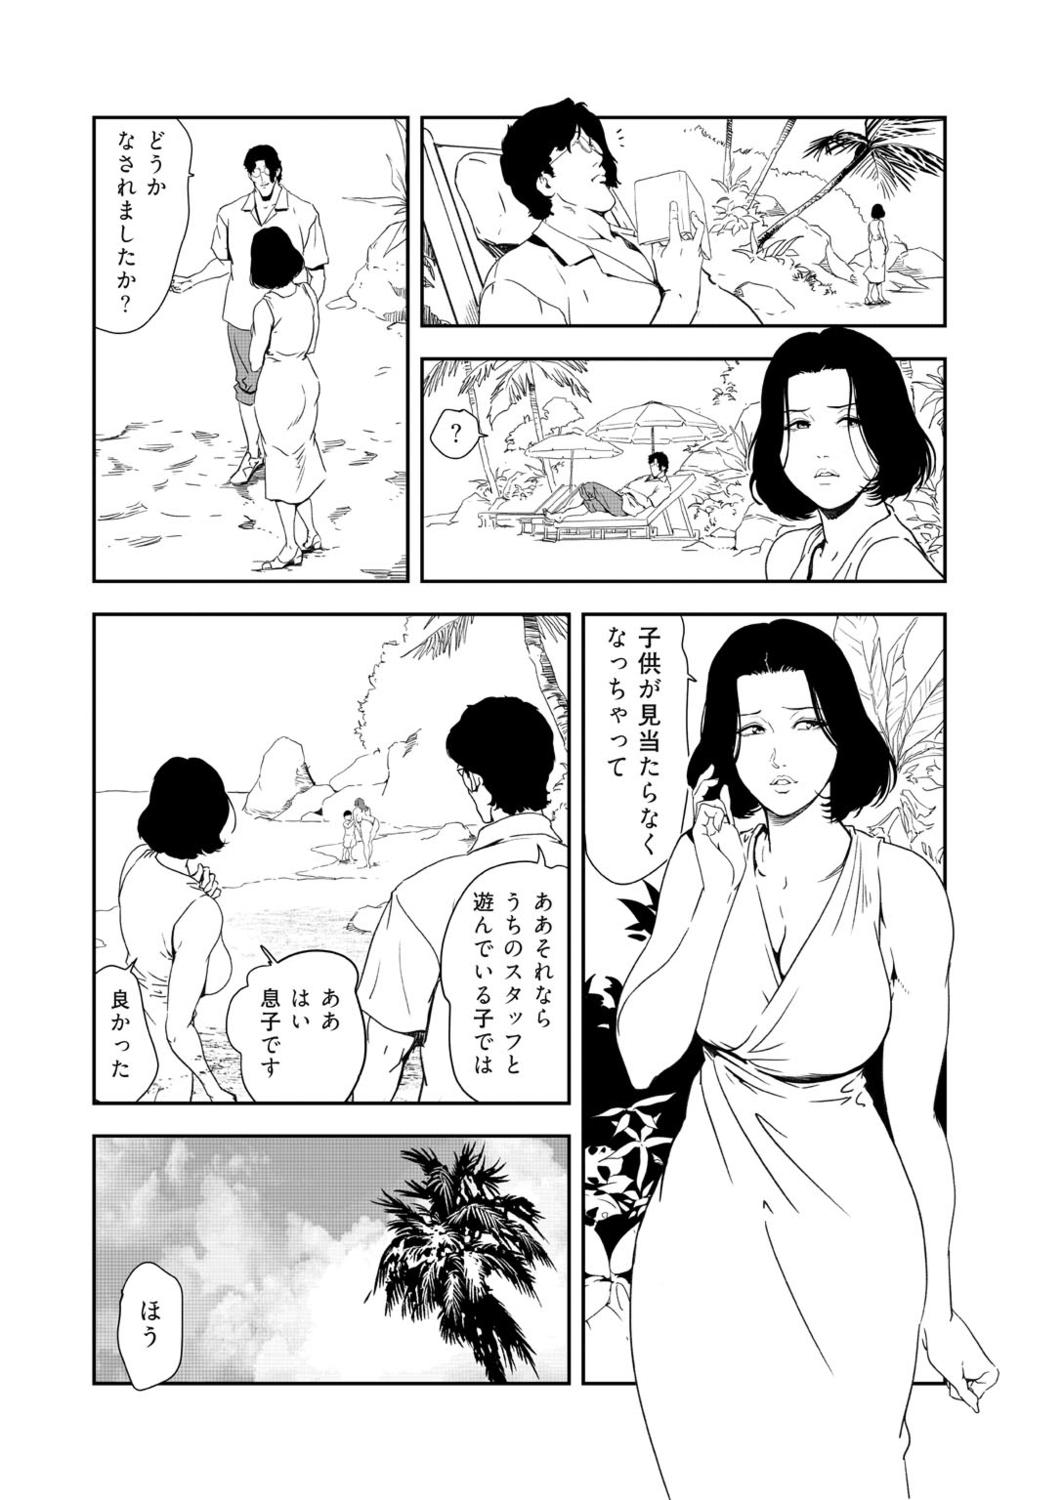 Nasty Free Porn Nikuhisyo Yukiko 41 Sfm - Page 8